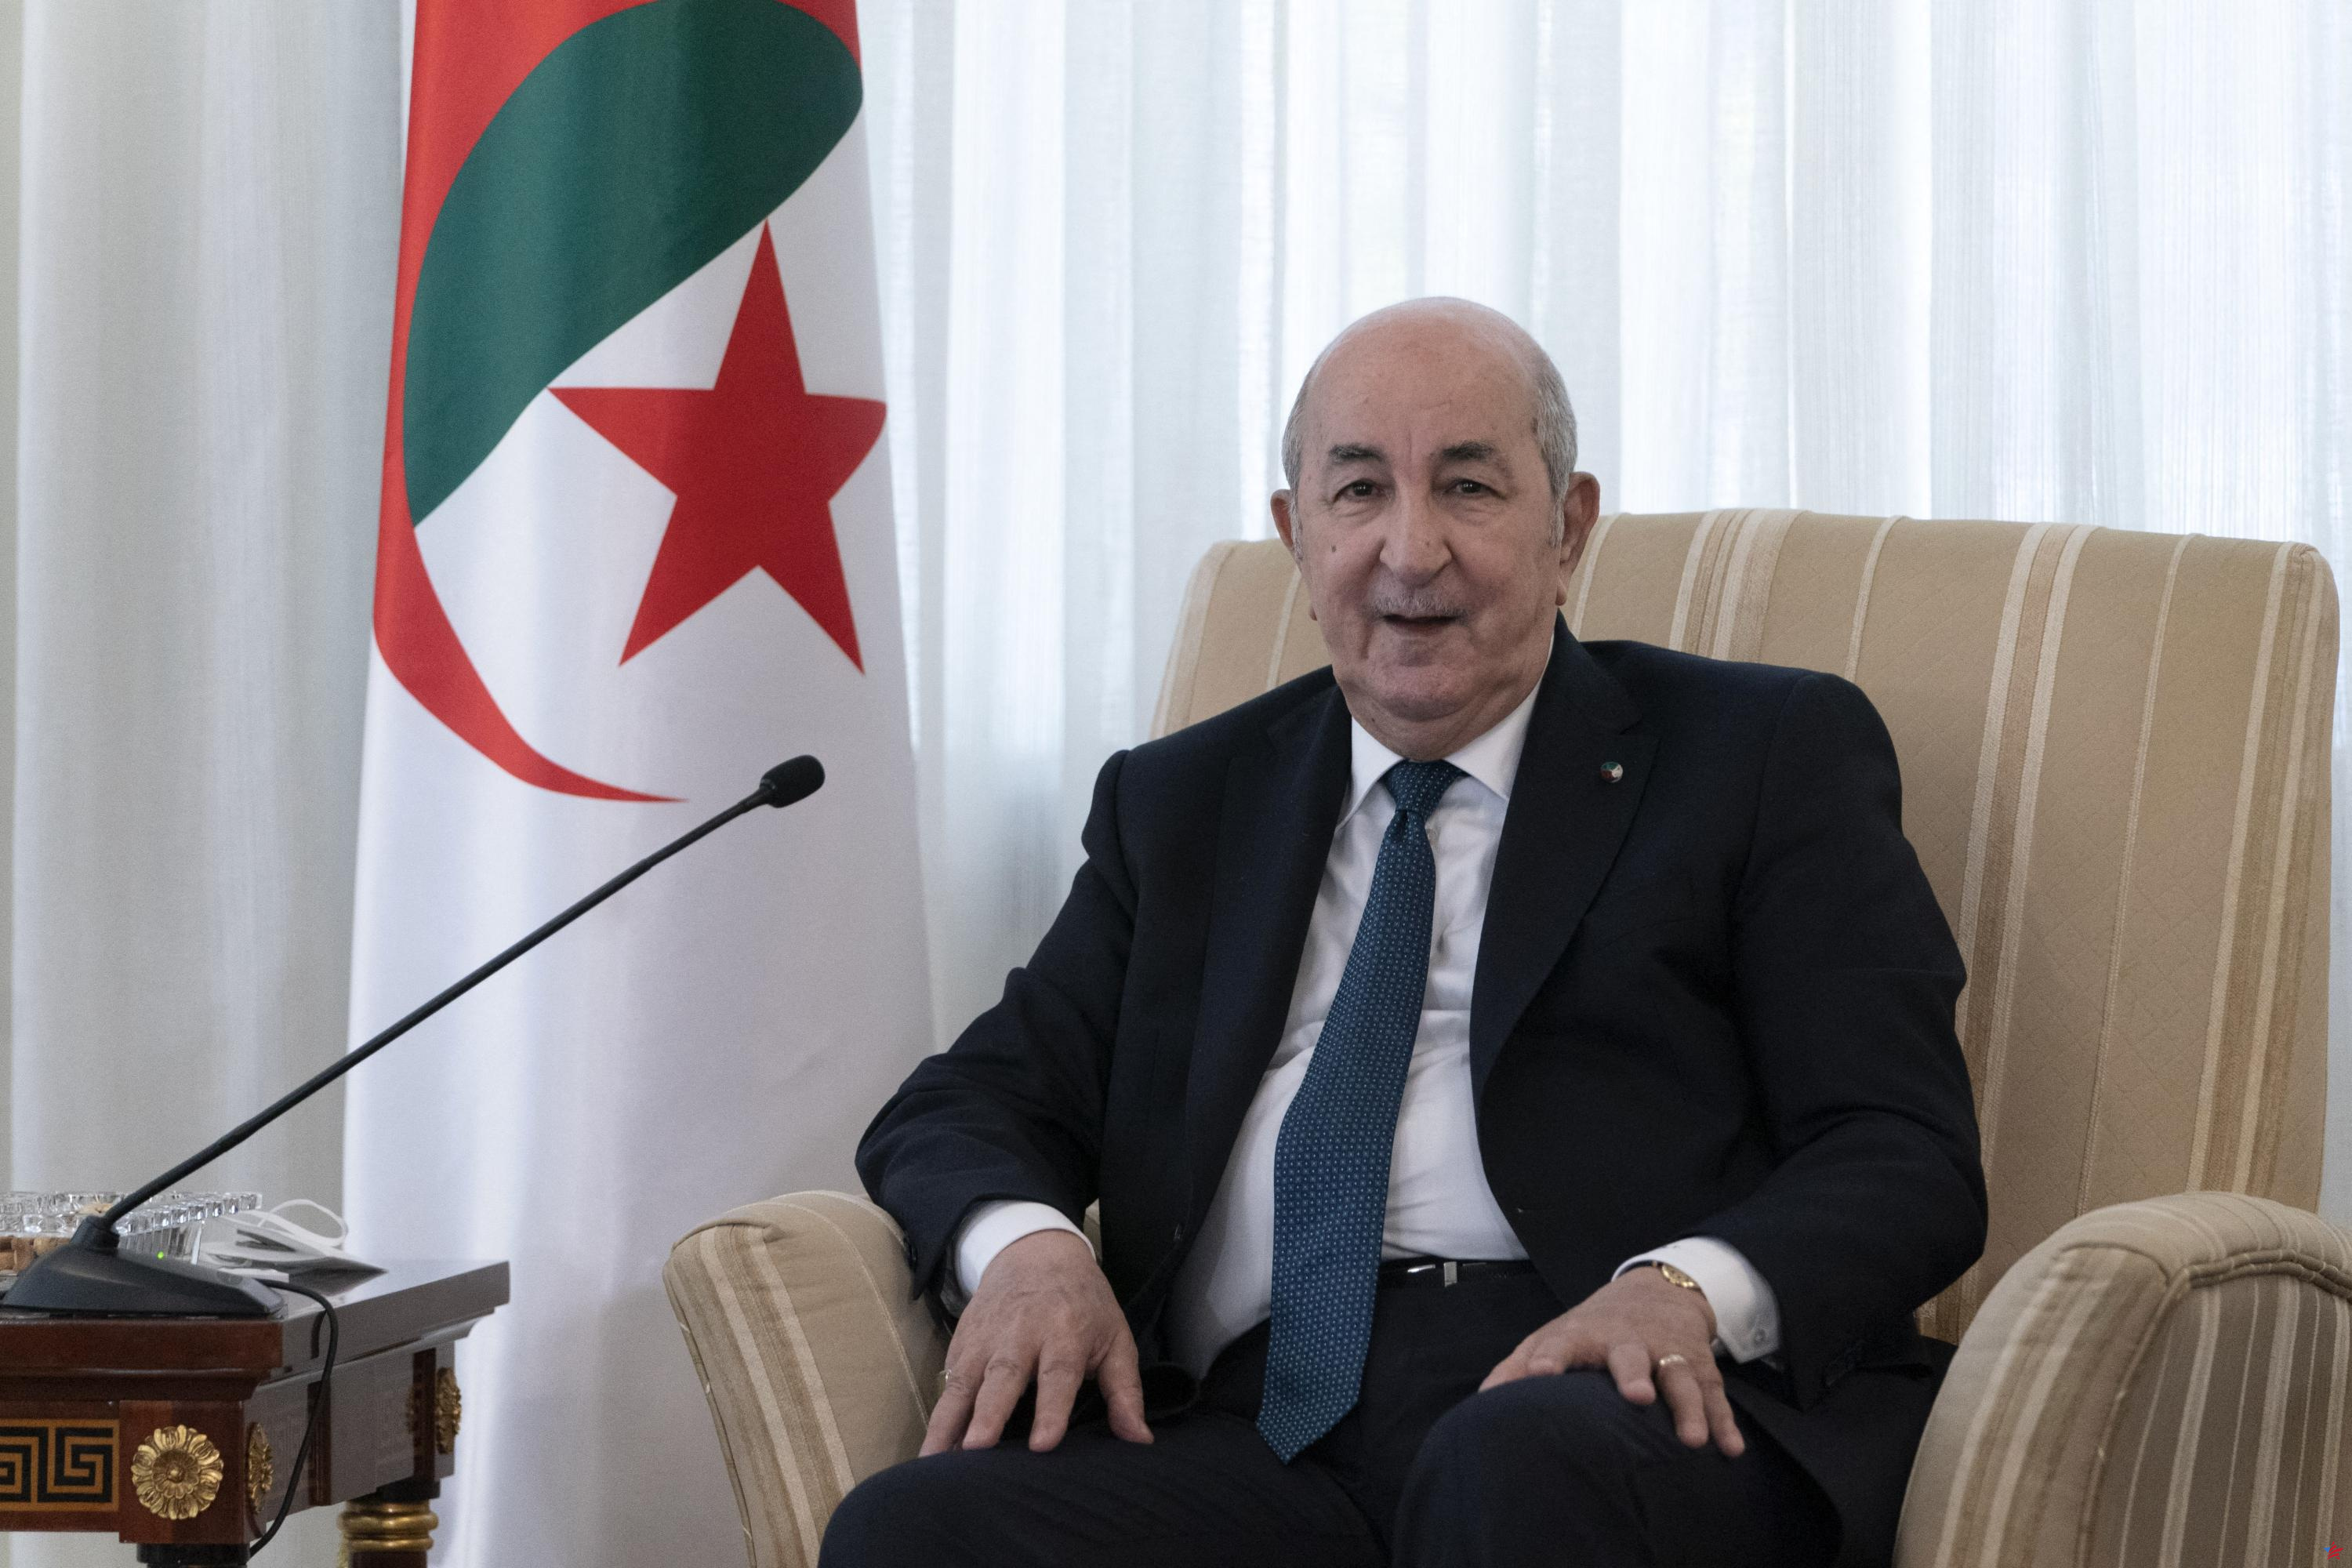 El presidente argelino realizará una visita de Estado a Francia “a finales de septiembre o principios de octubre”, según el Elíseo